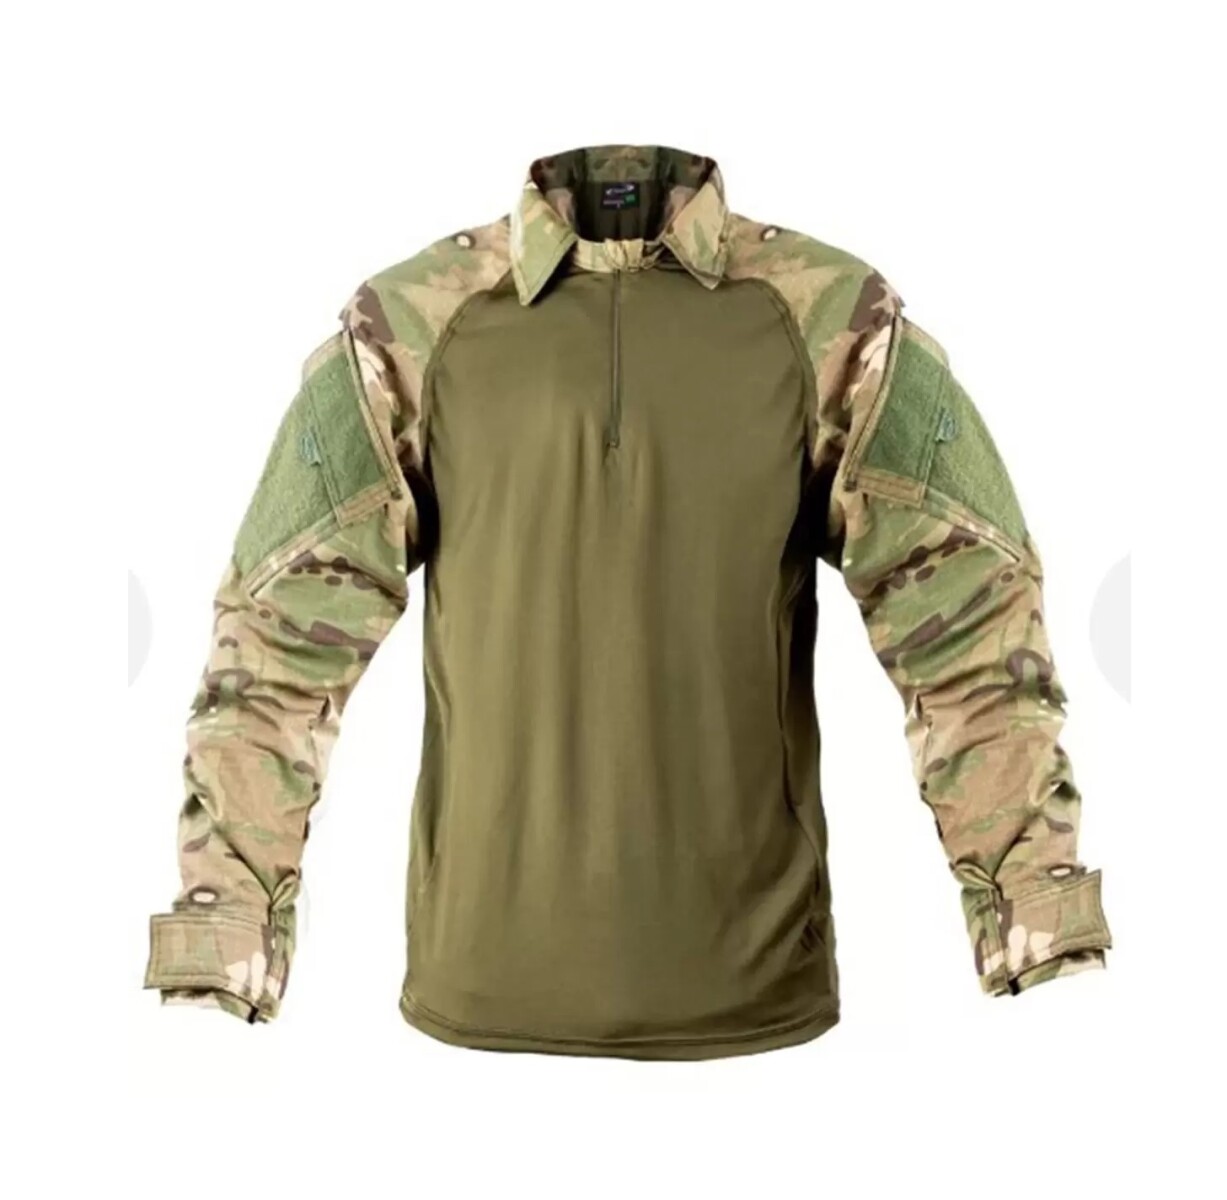 Camisaco táctico Combat RAGLAN - Fox Boy - Multiforest 